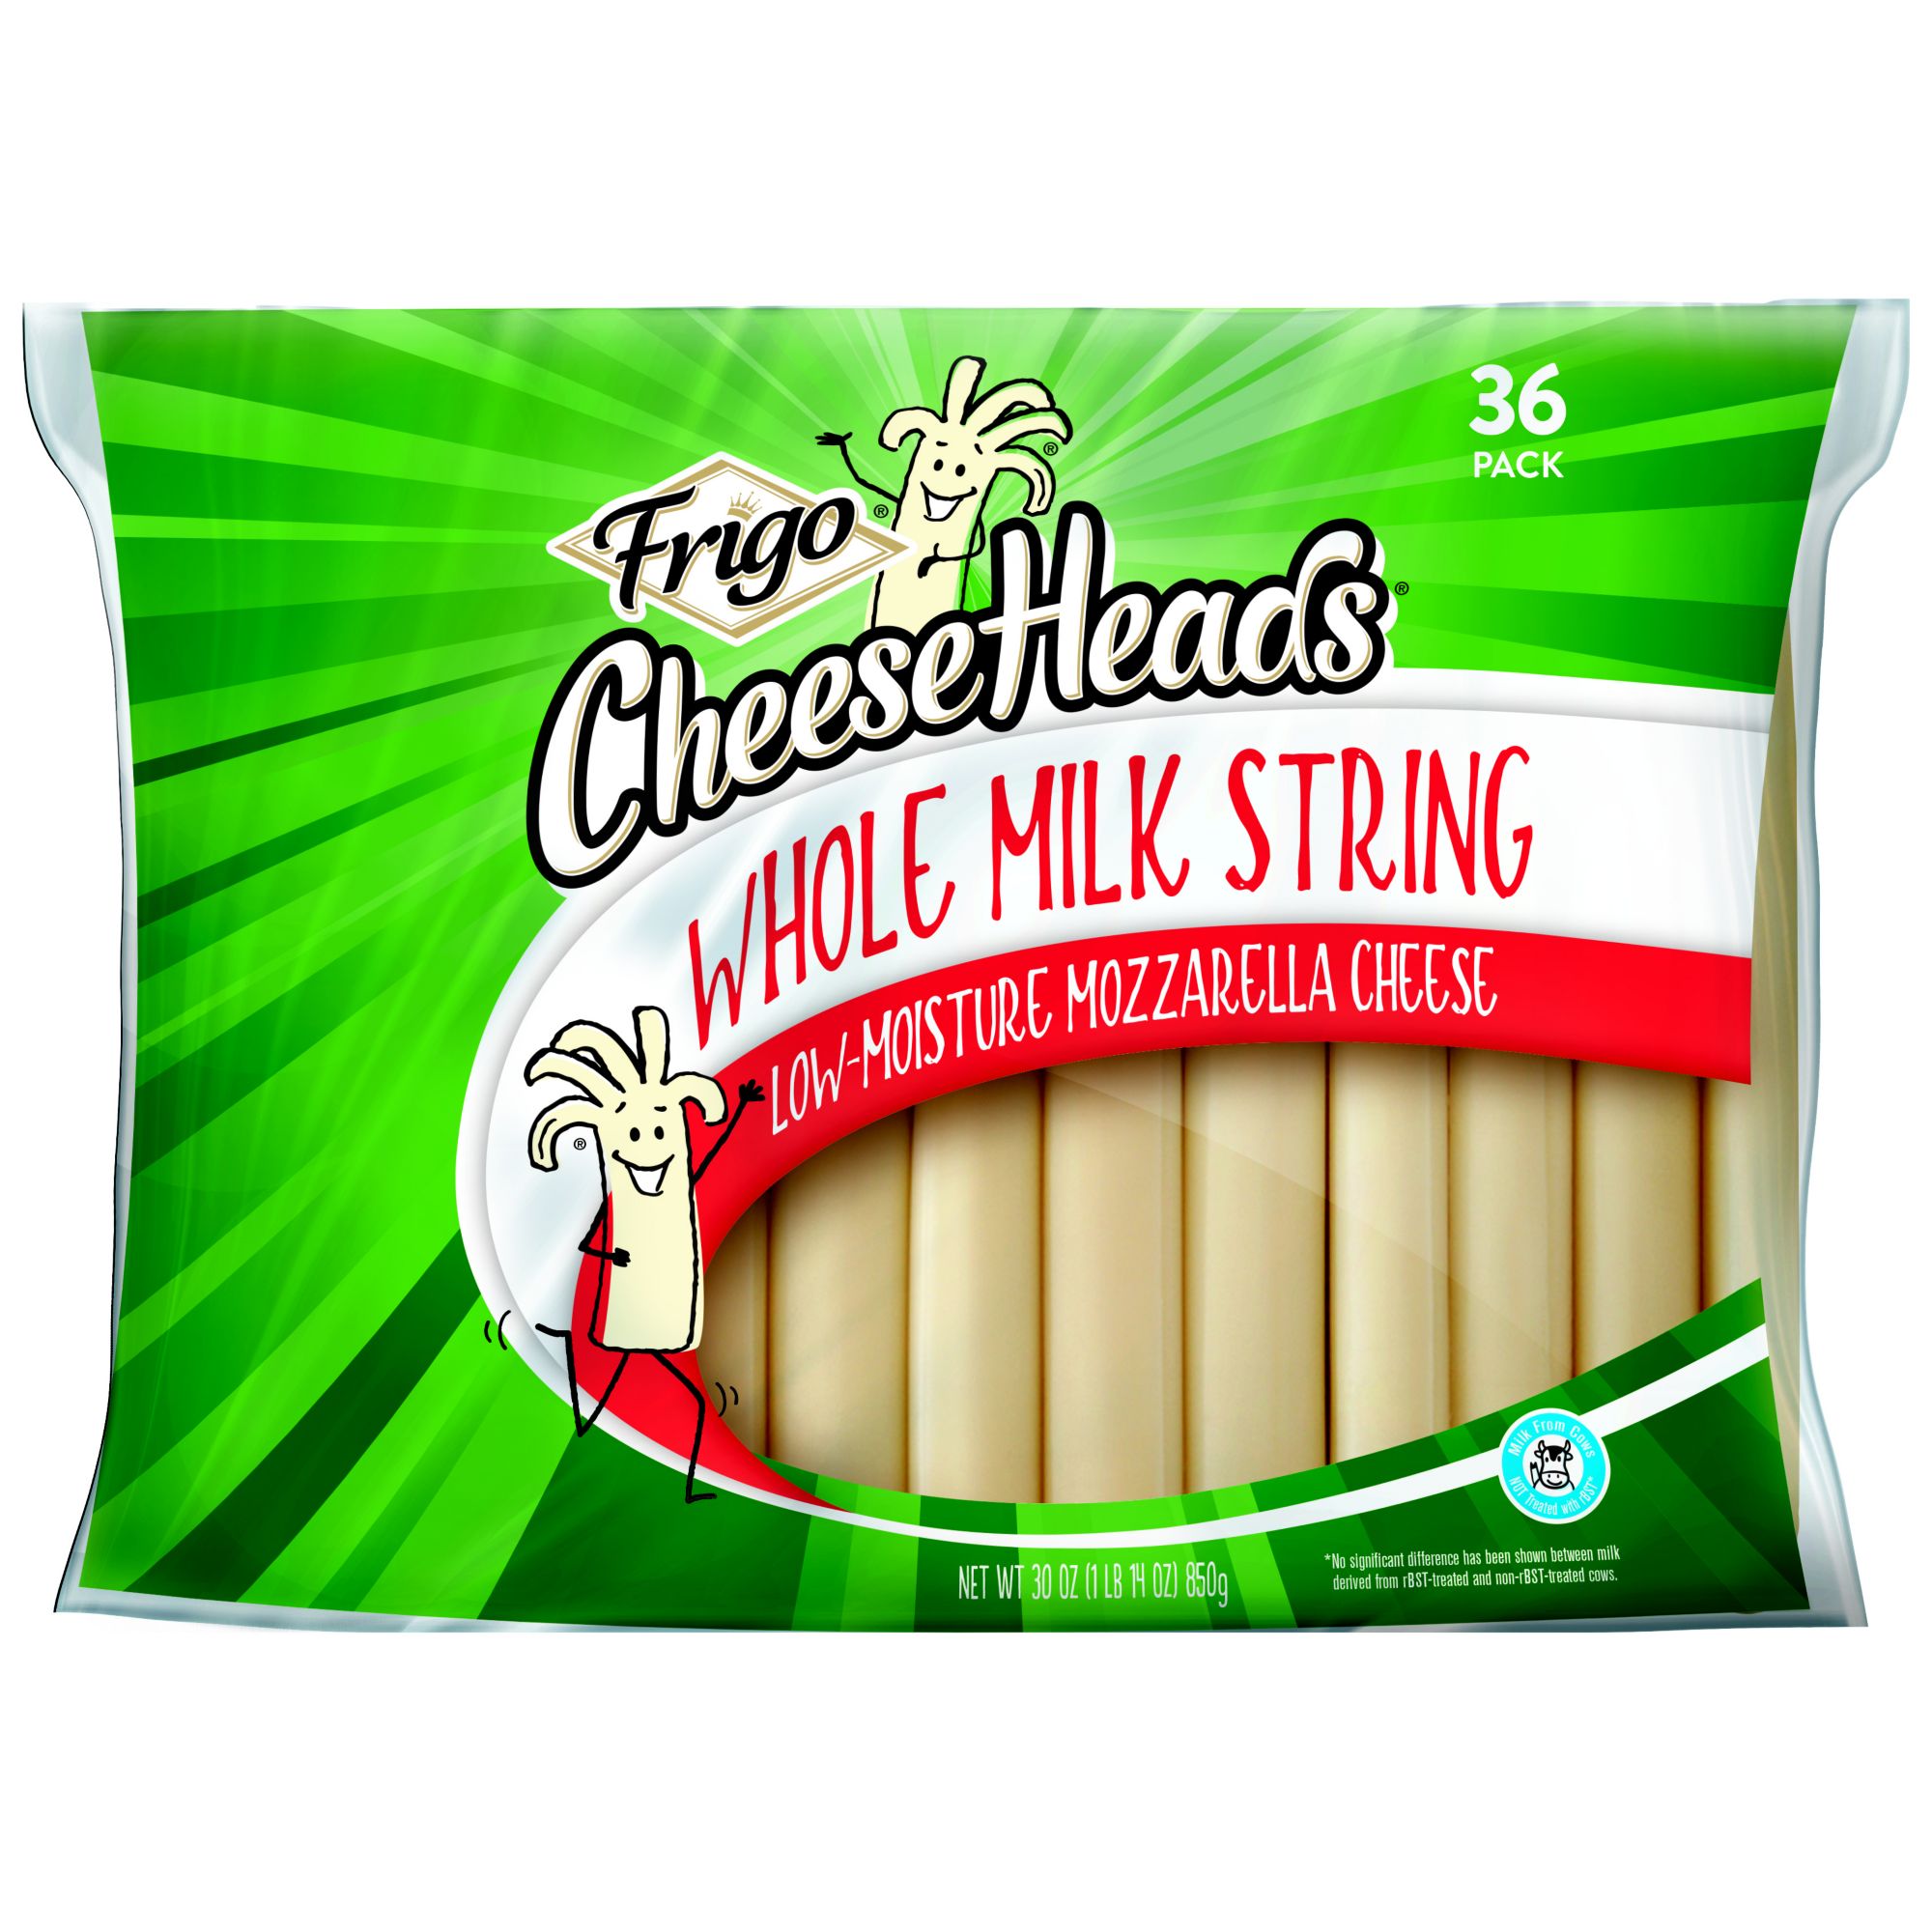 Frigo Cheeseheads Whole Milk String Mozzarella Cheese, 30 oz.